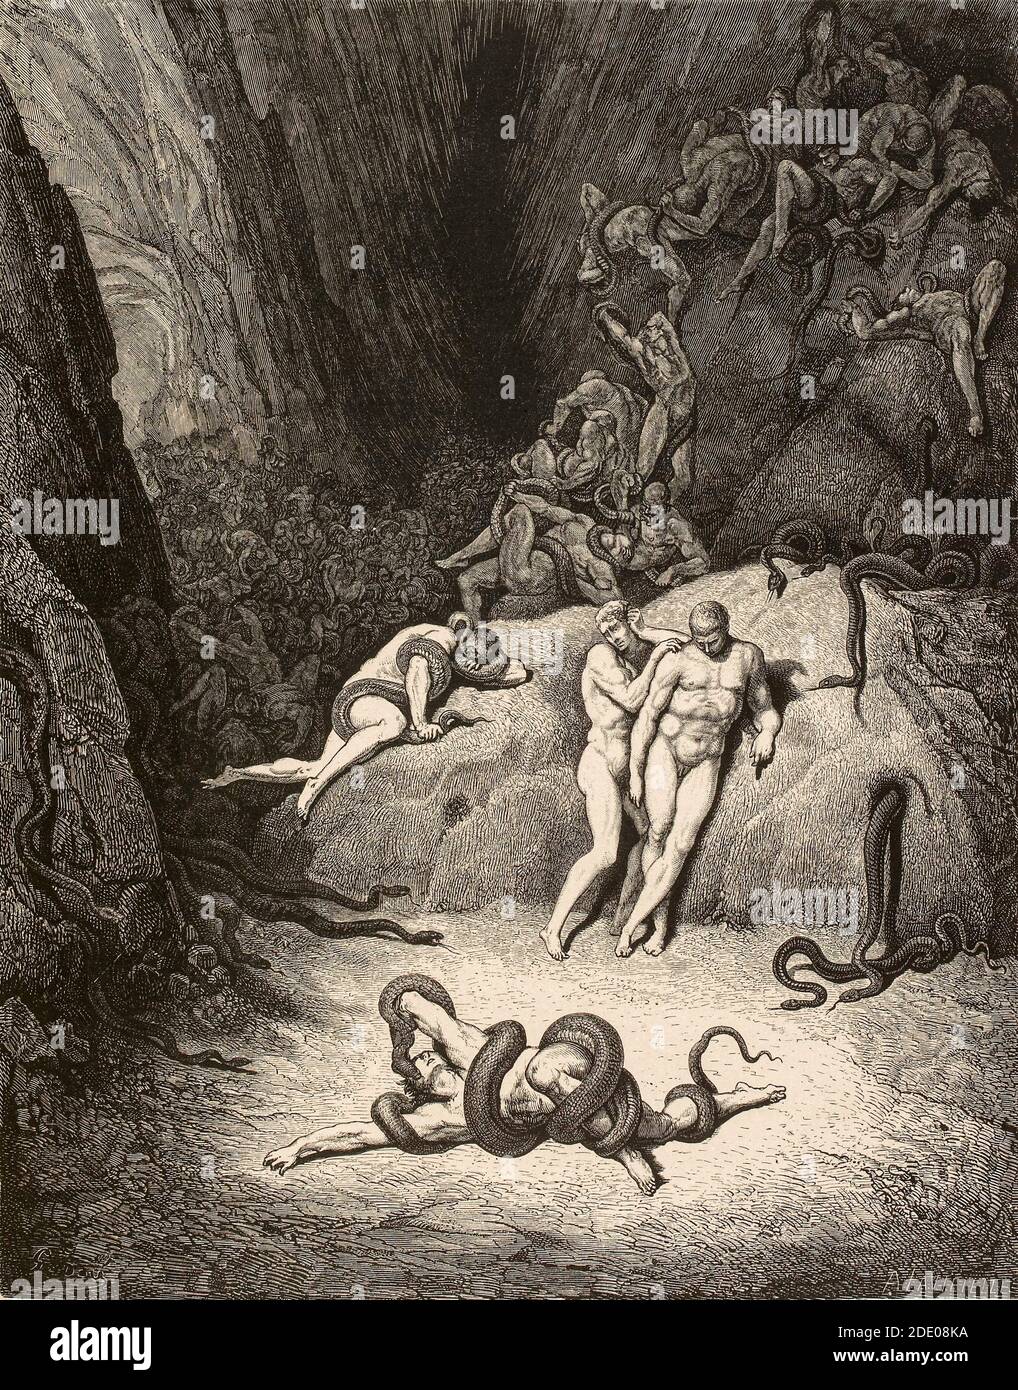 Dante Divina Commedia - Inferno - XXIV canto - Metamorfosi Dei ladri - VIII cerchio - illustrazione di Gustave Dorè Foto Stock